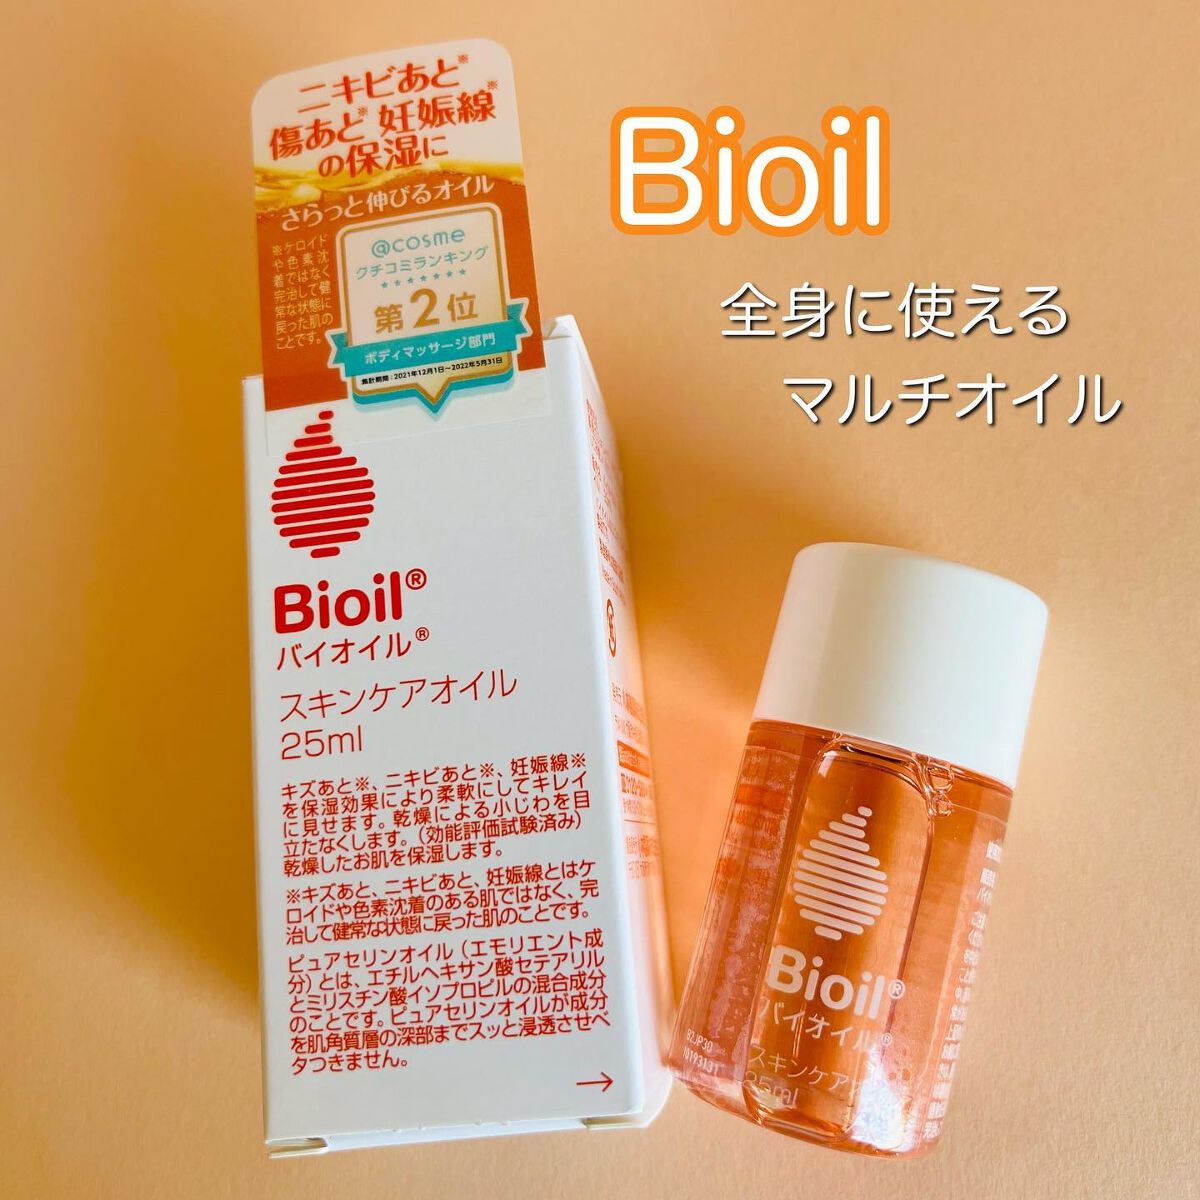 Bioil バイオイル25ml - 美容液